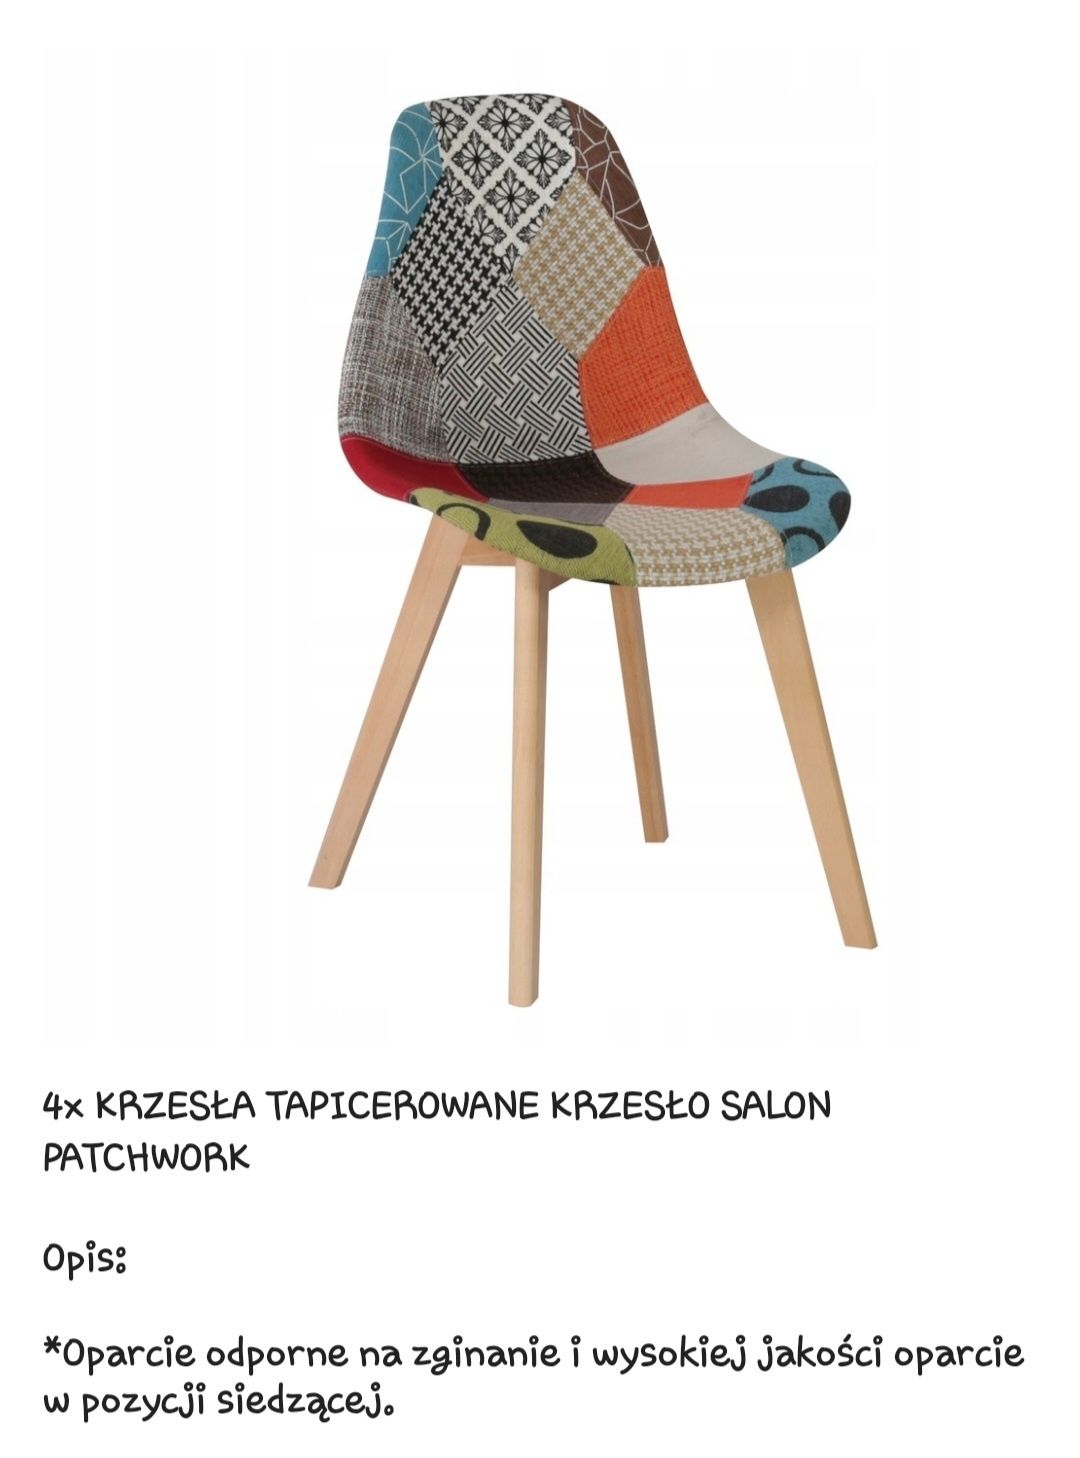 4x krzesła tapicerowane patchwork